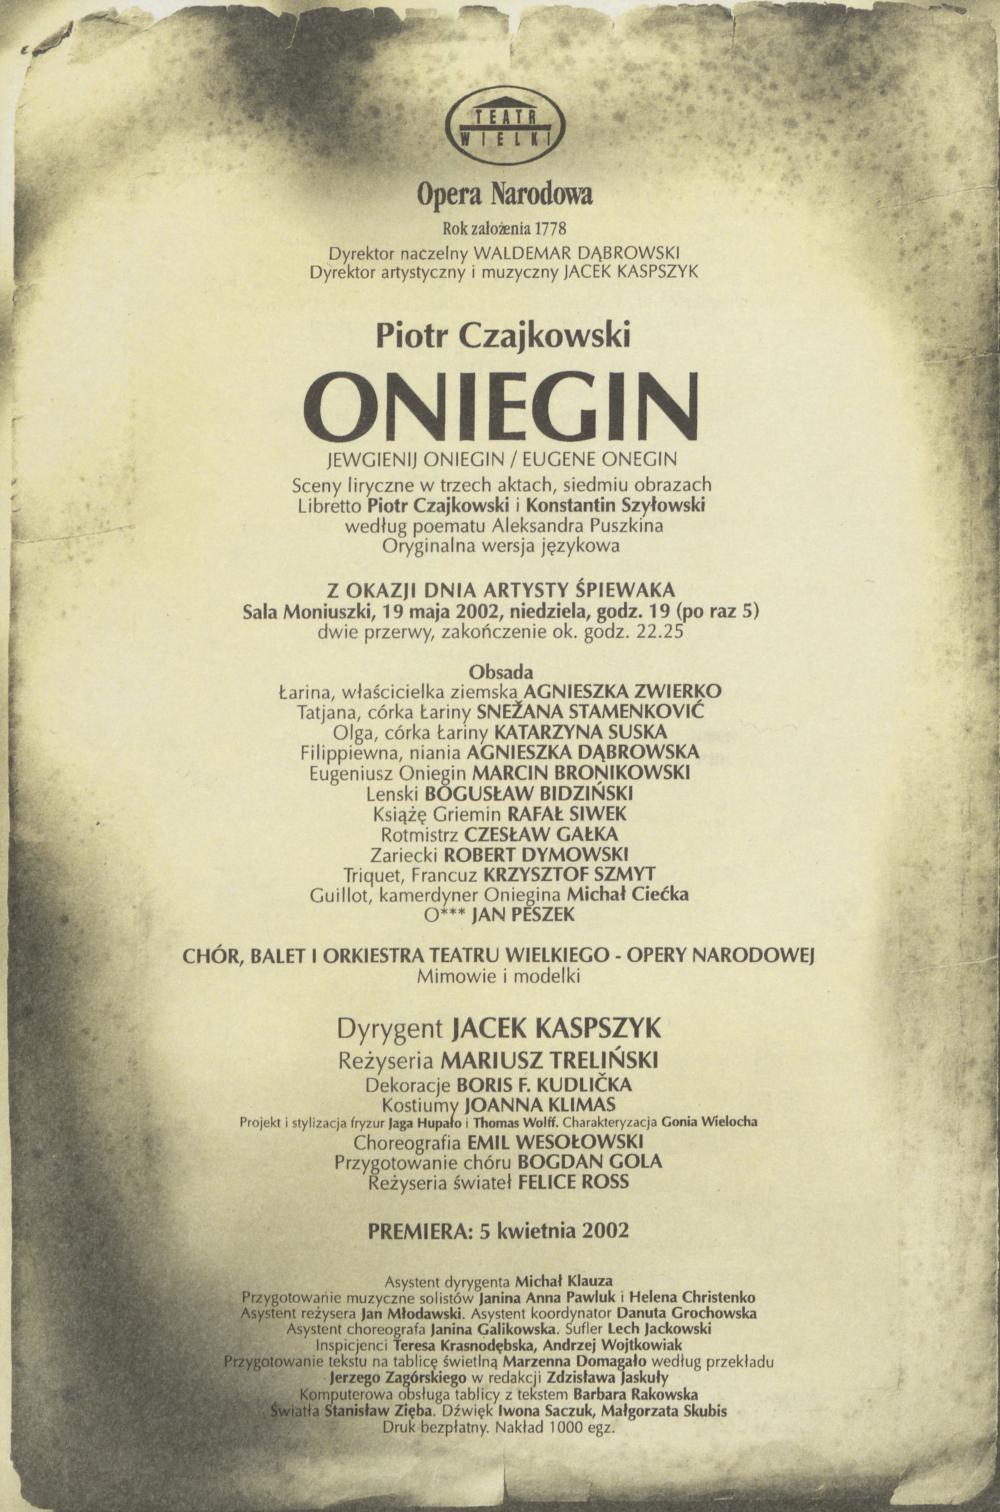 Wkładka obsadowa „Oniegin” Piotr Czajkowski 19-05-2002